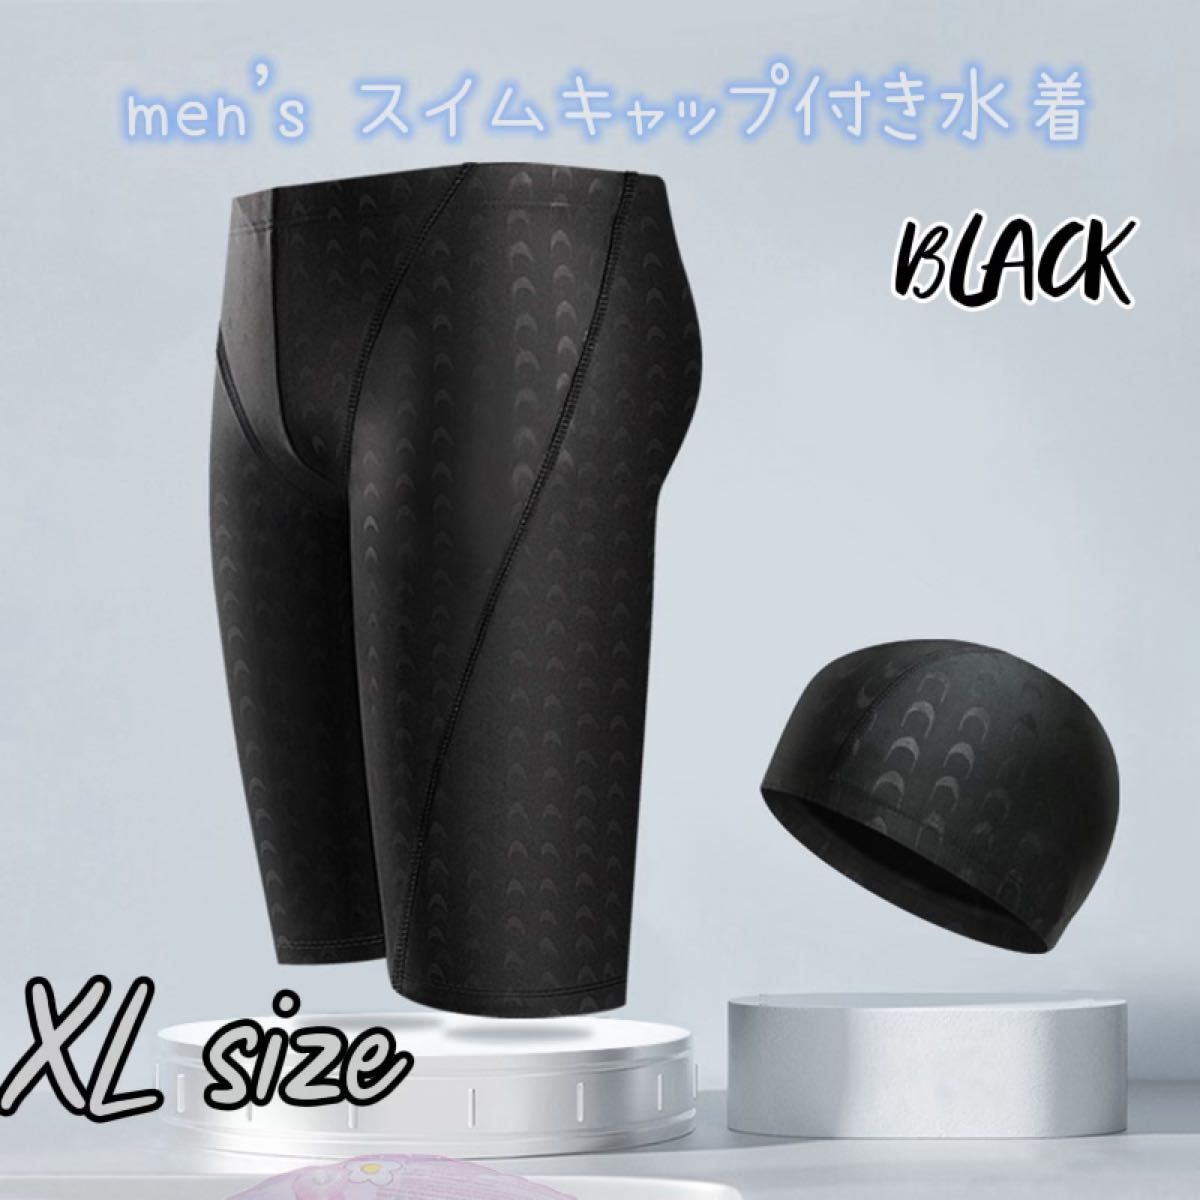 XL メンズ 水着 スイムキャップ セット 黒 水泳 プール 競泳  抗菌 ブラック フィットネス 競泳 スイムウェア